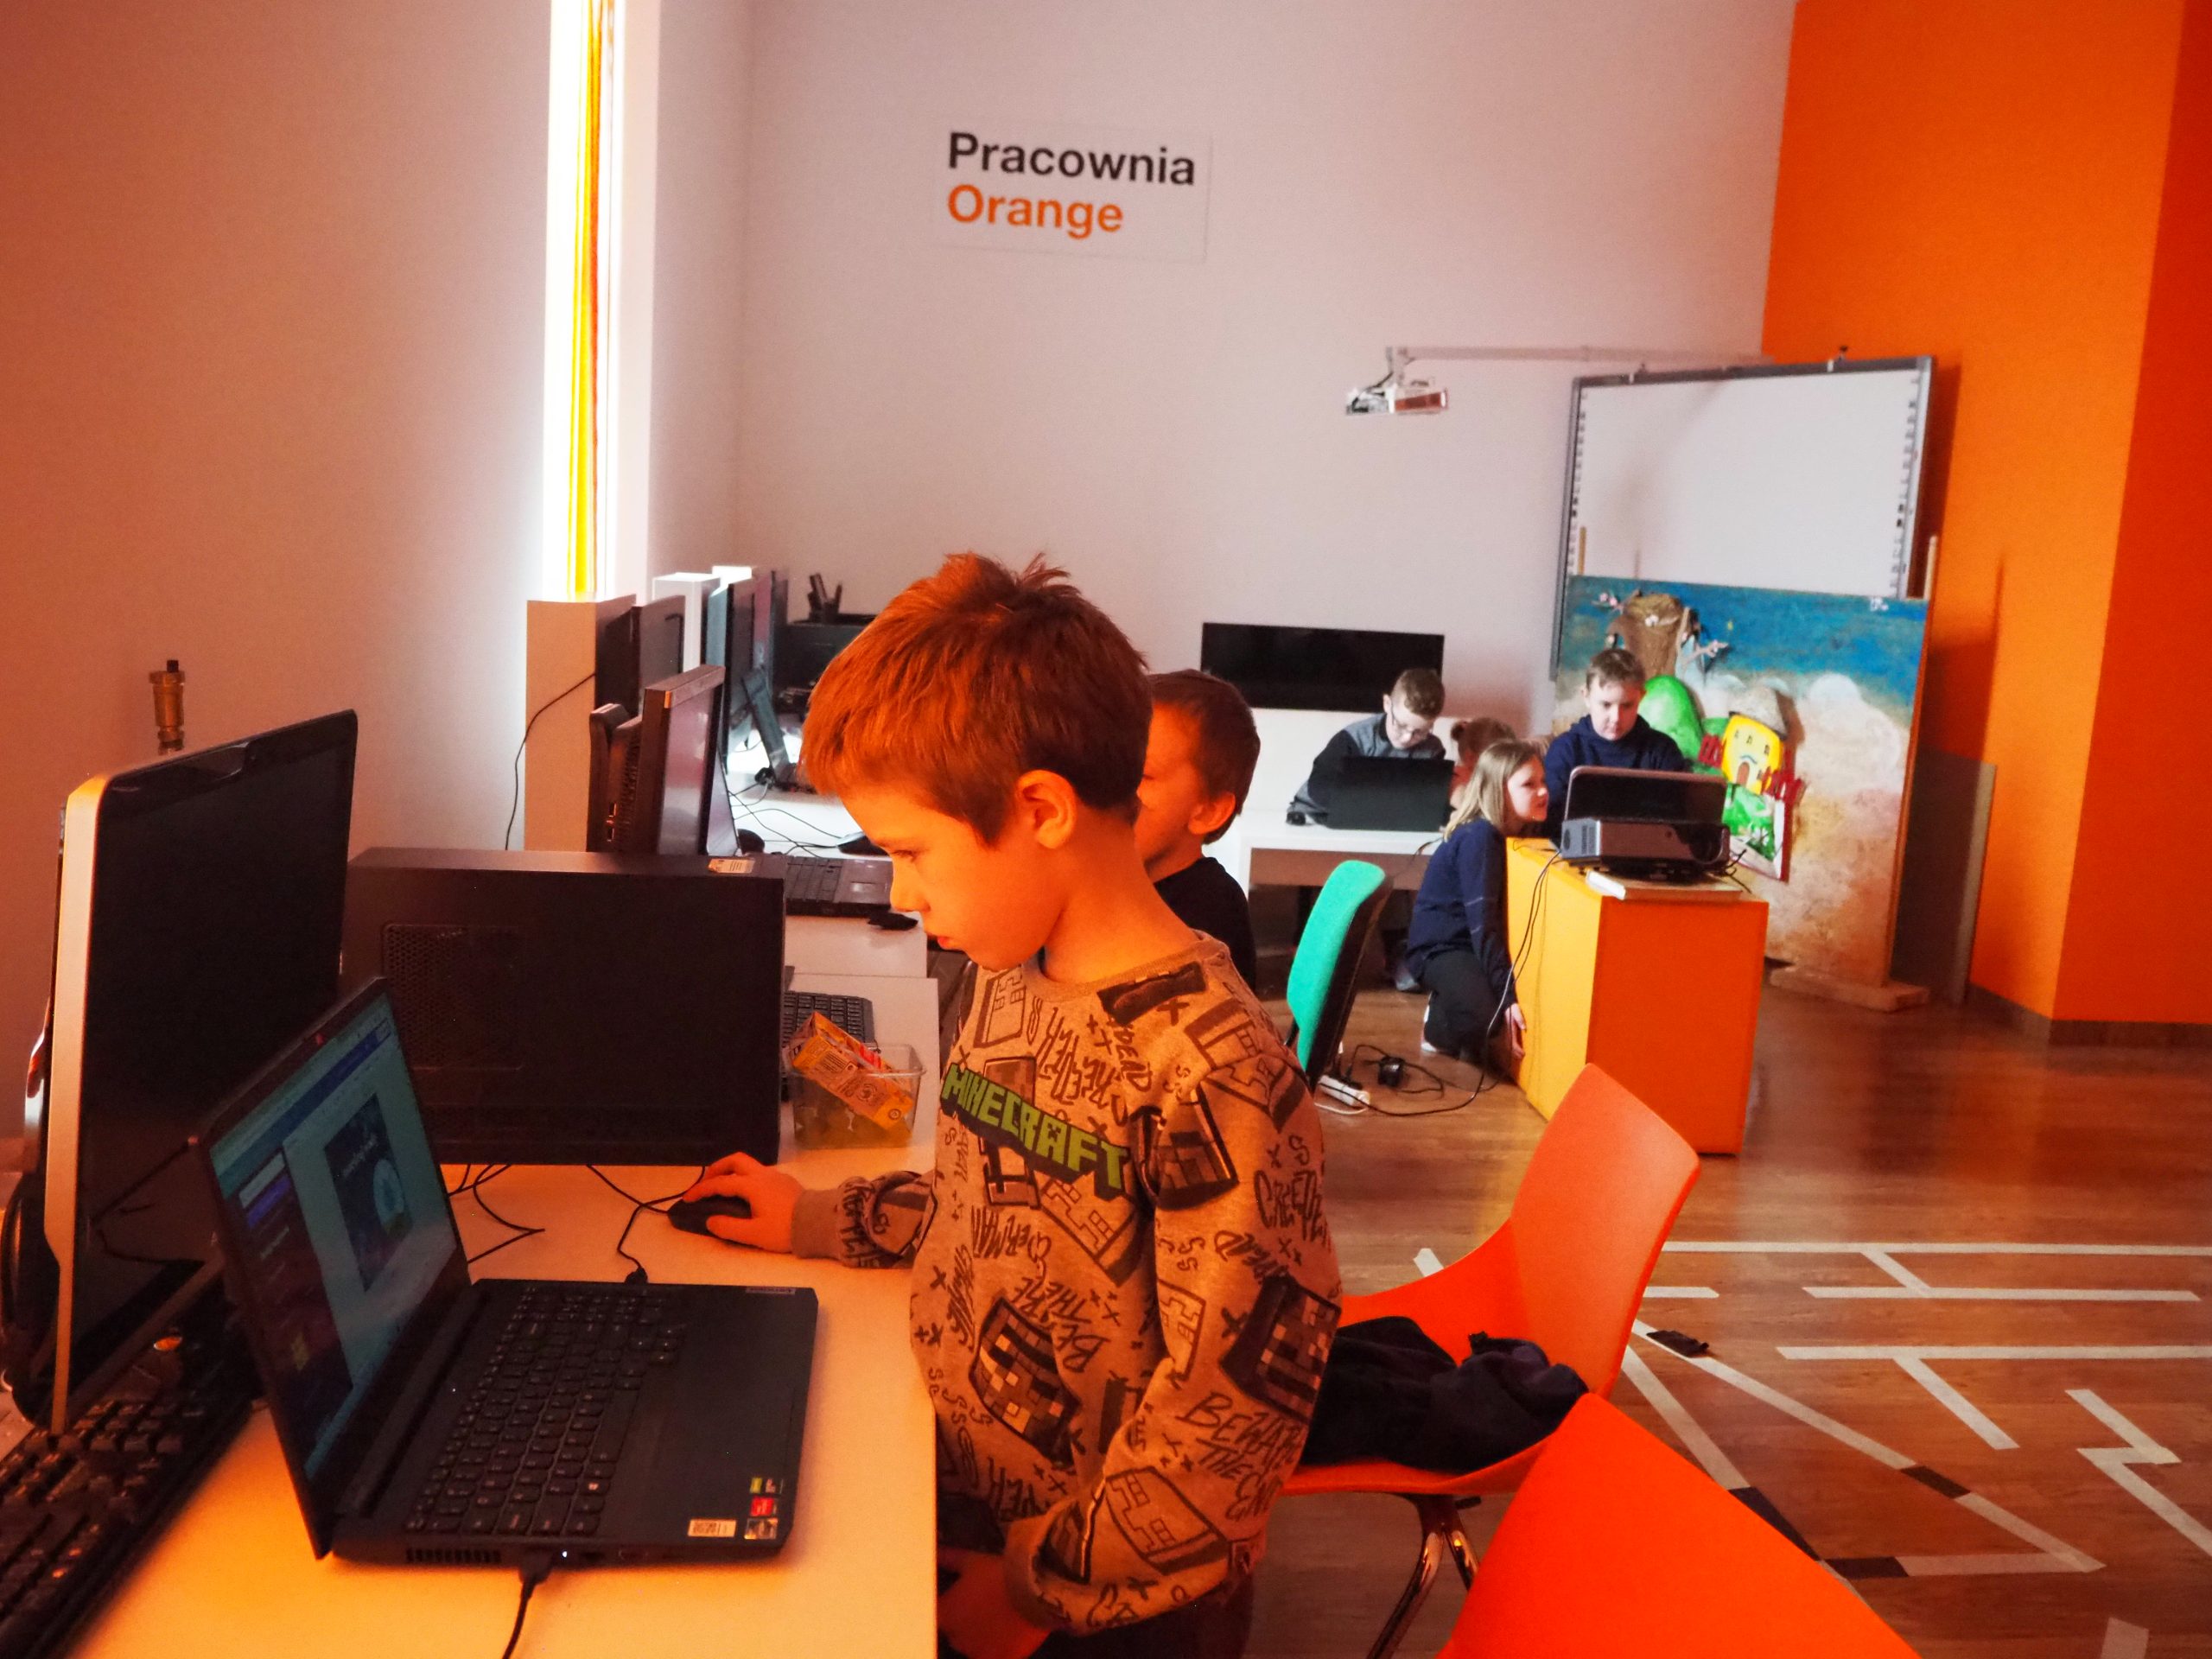 dzieci przy laptopie w pracowni orange robią projekt w programie graficznym